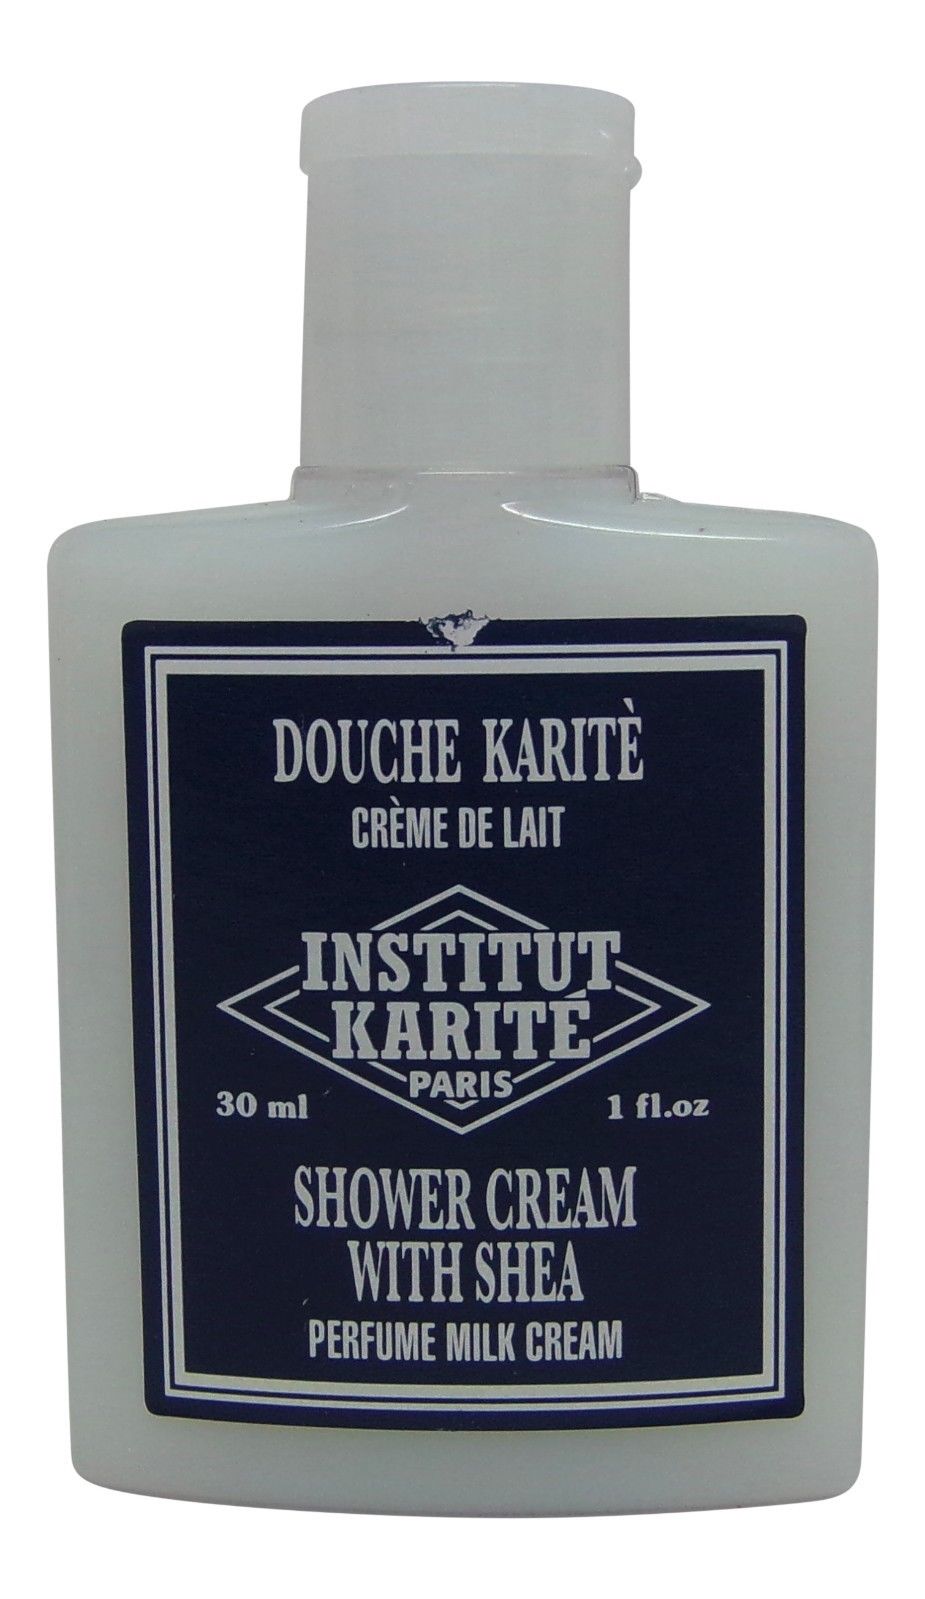 Institut Karite Shea Shower Cream lot 8 Each 1oz bottles. Total of 8oz